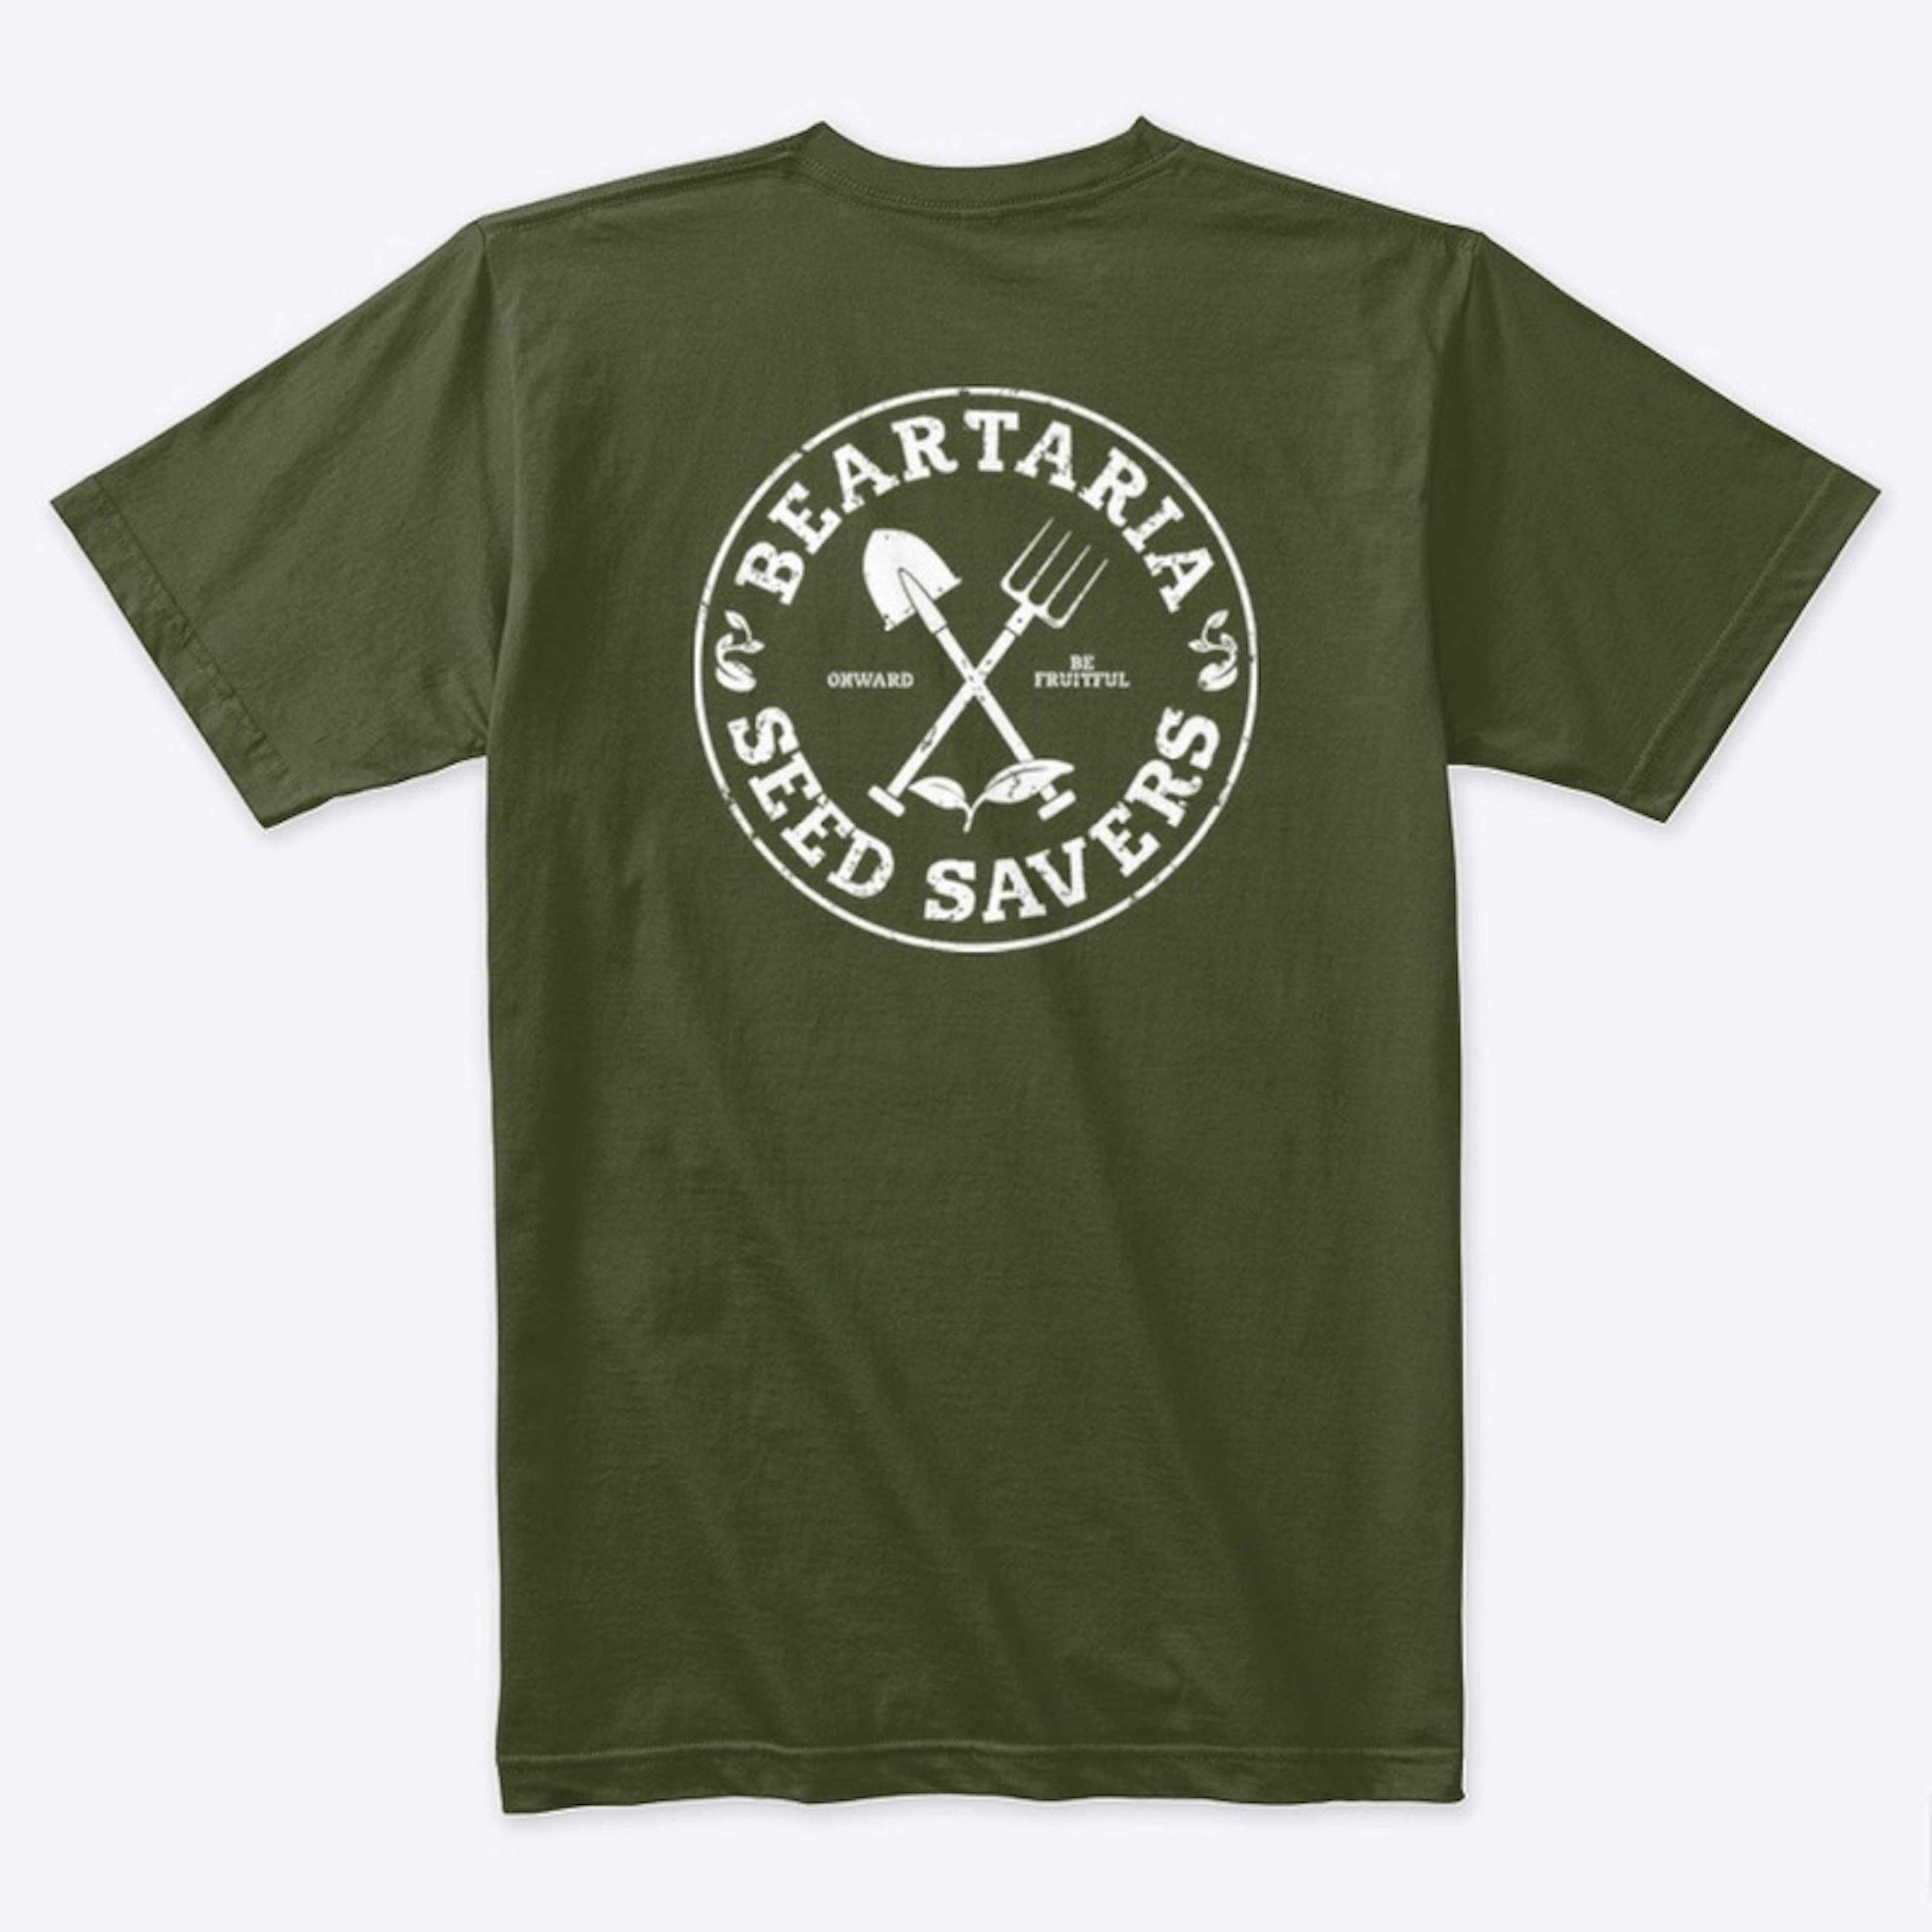 Beartaria Seed Savers t shirt